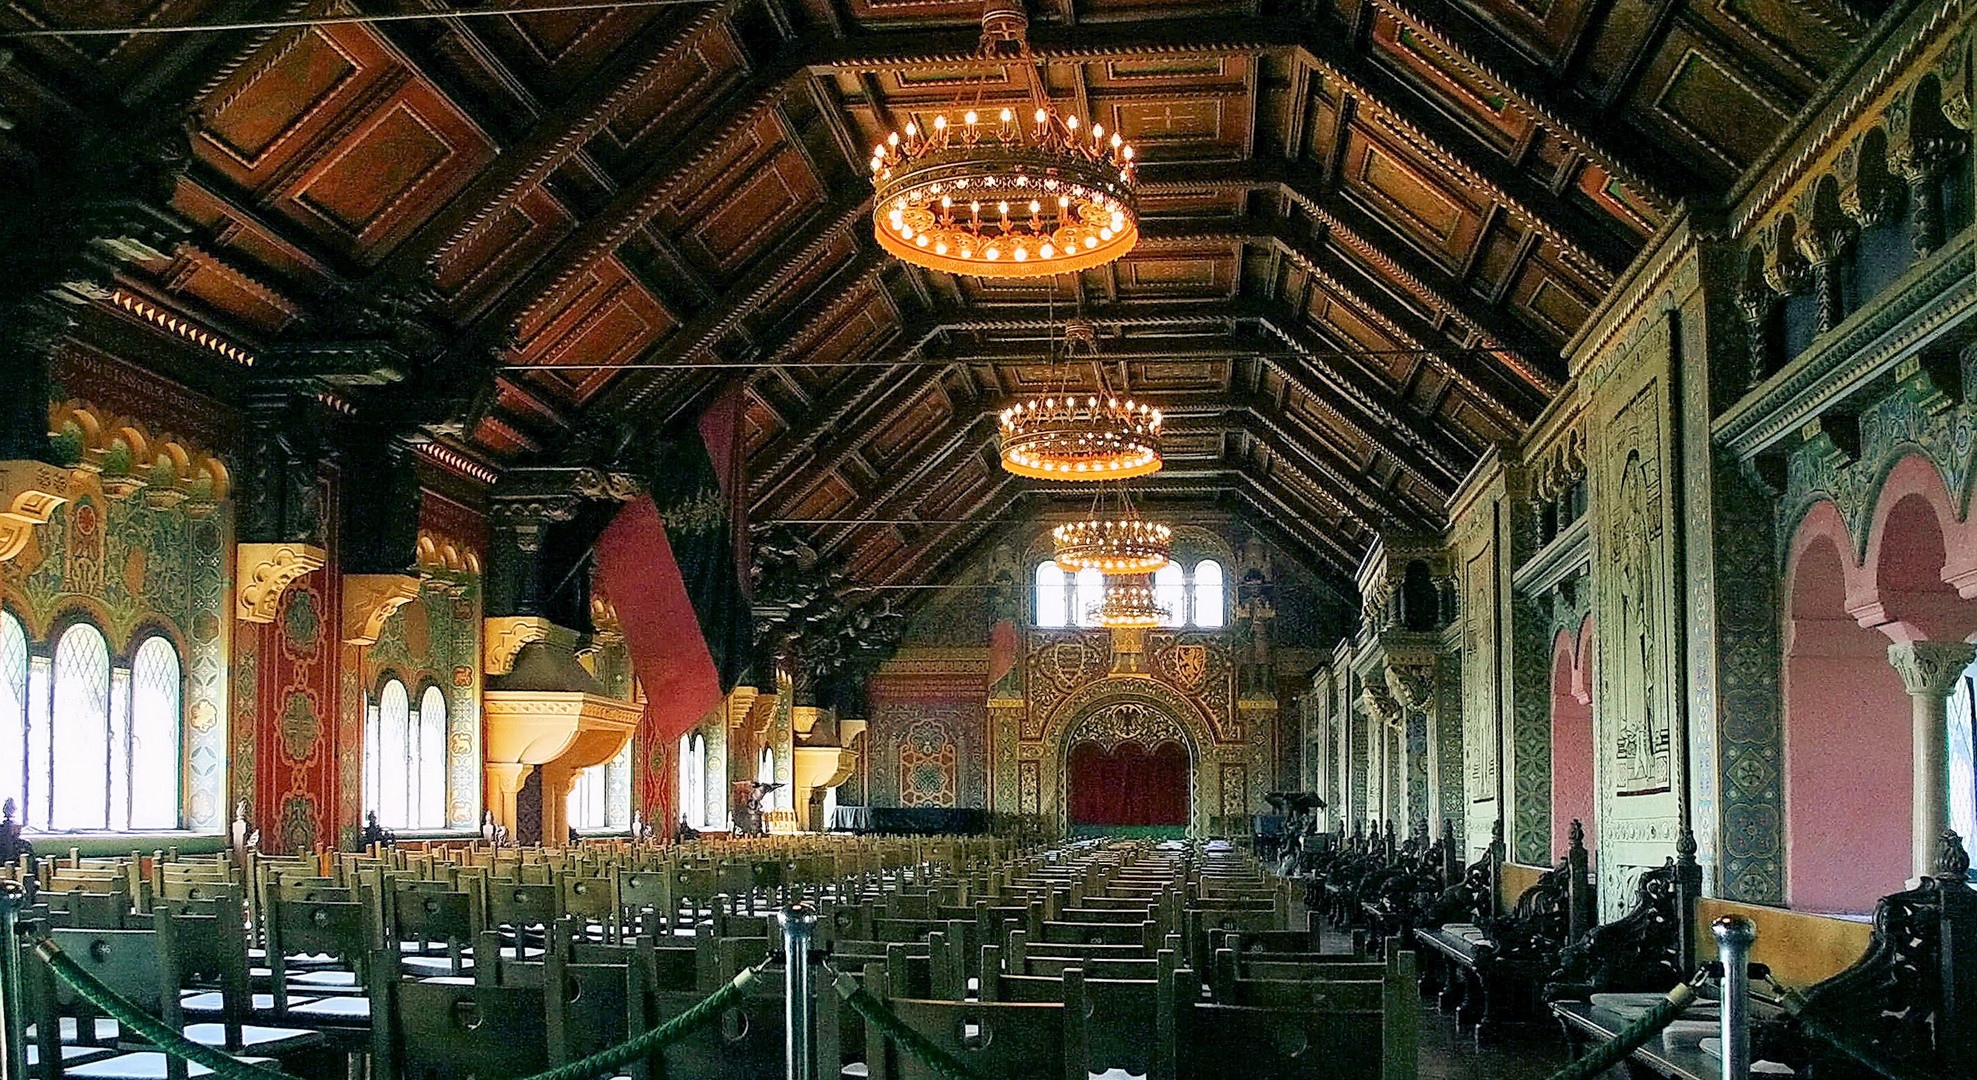 Sängersaal auf der Wartburg